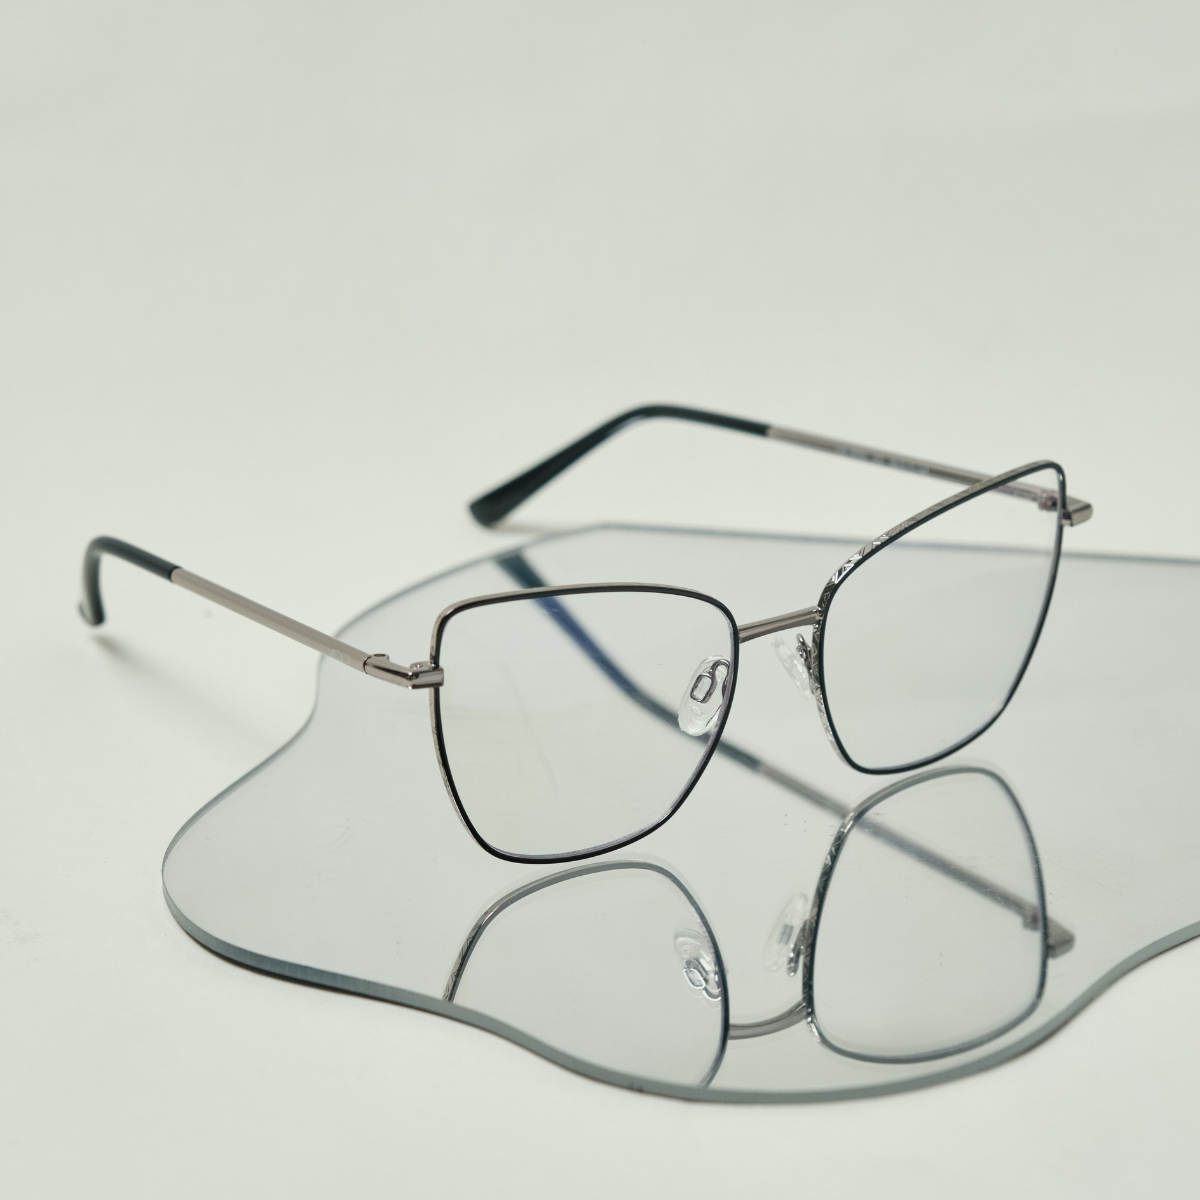 3 Benefits of Progressive Readers Over Bifocals